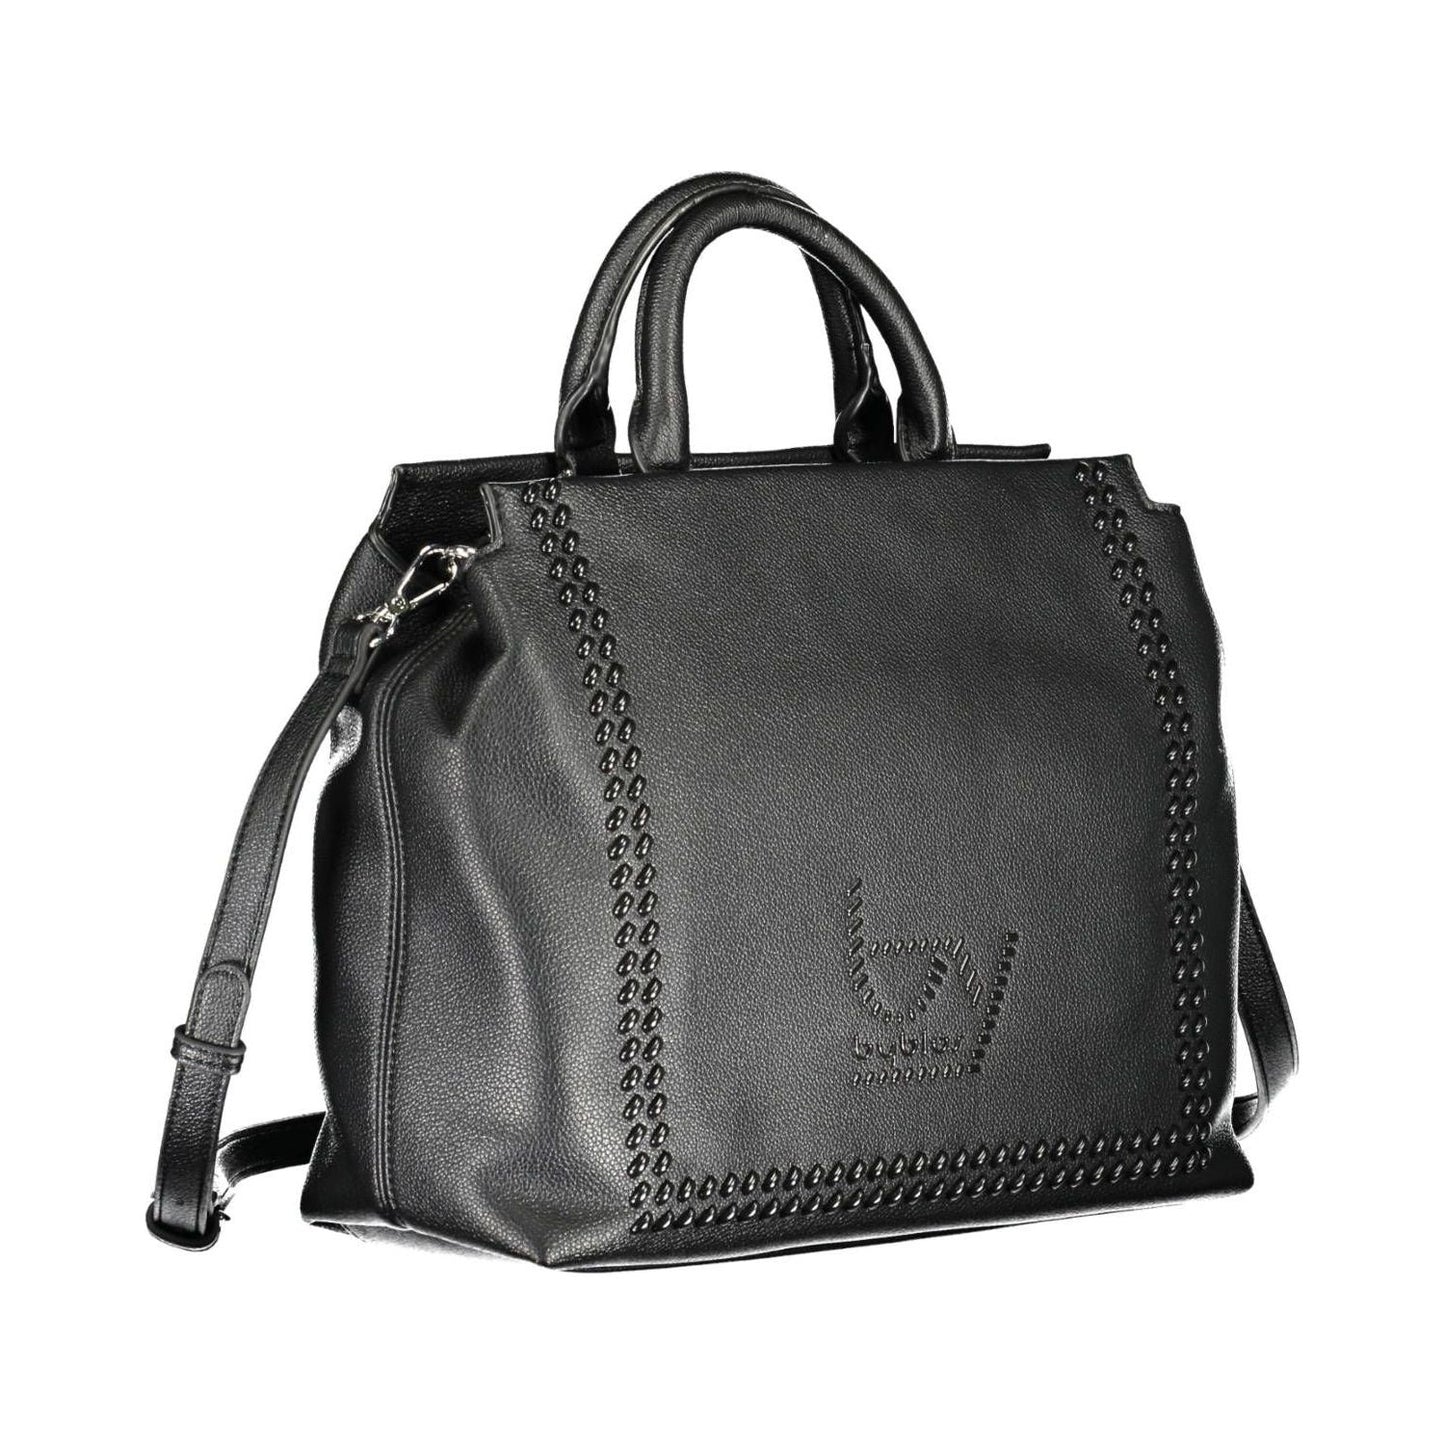 BYBLOS | Elegant Two-Handle Black Handbag with Contrasting Details| McRichard Designer Brands   